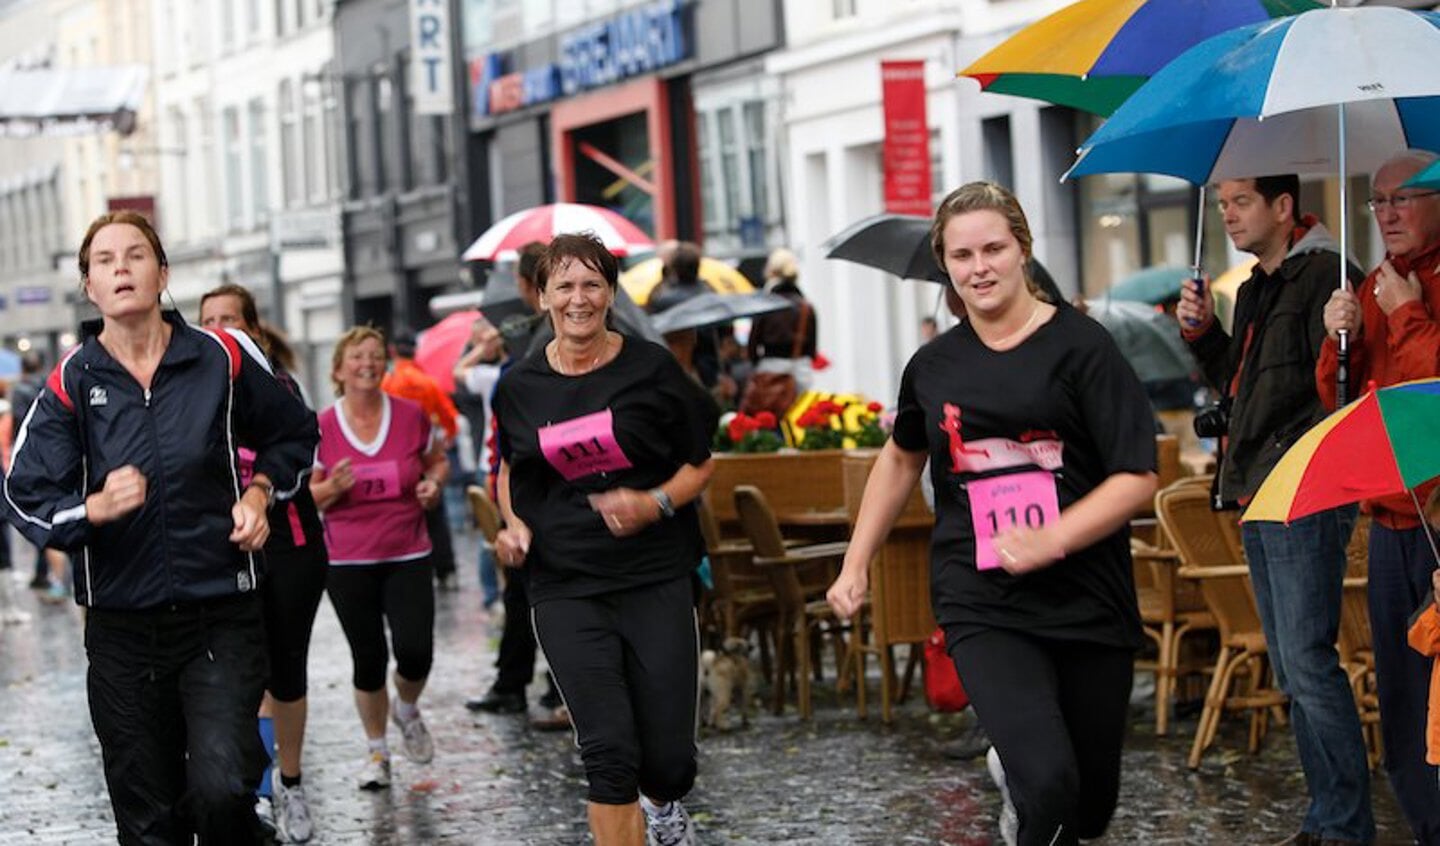 De deelnemers aan vijf kilometer van de eerste Ladiesrun door het centrum van Breda. foto Peter Visser